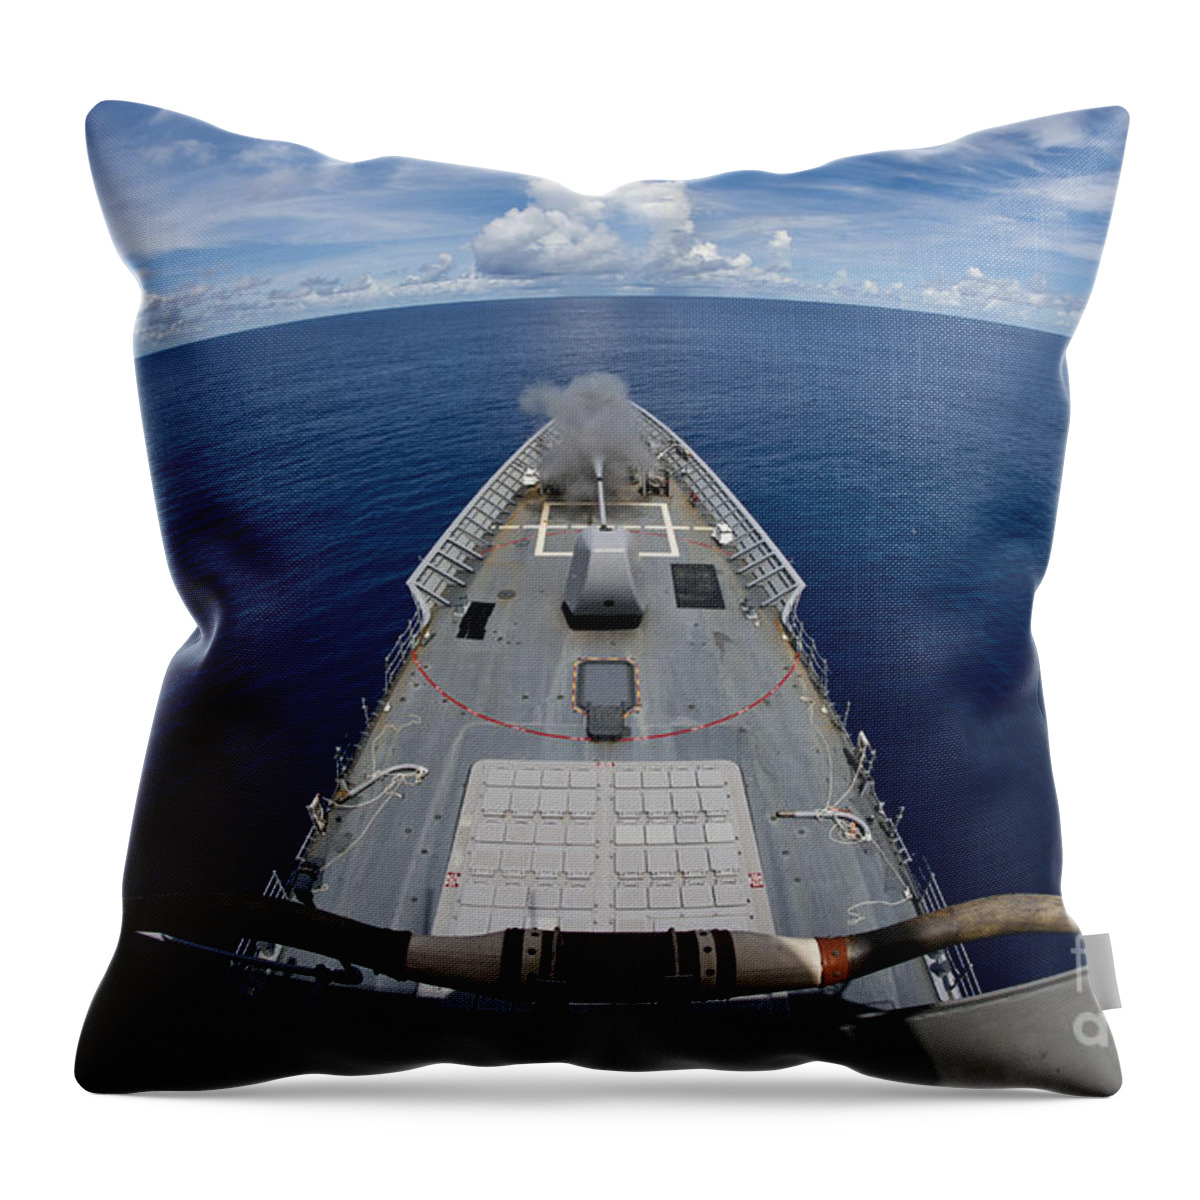 Us Navy Throw Pillow featuring the photograph Uss Cowpens Fires Its Mk 45 Mod 2 Gun by Stocktrek Images